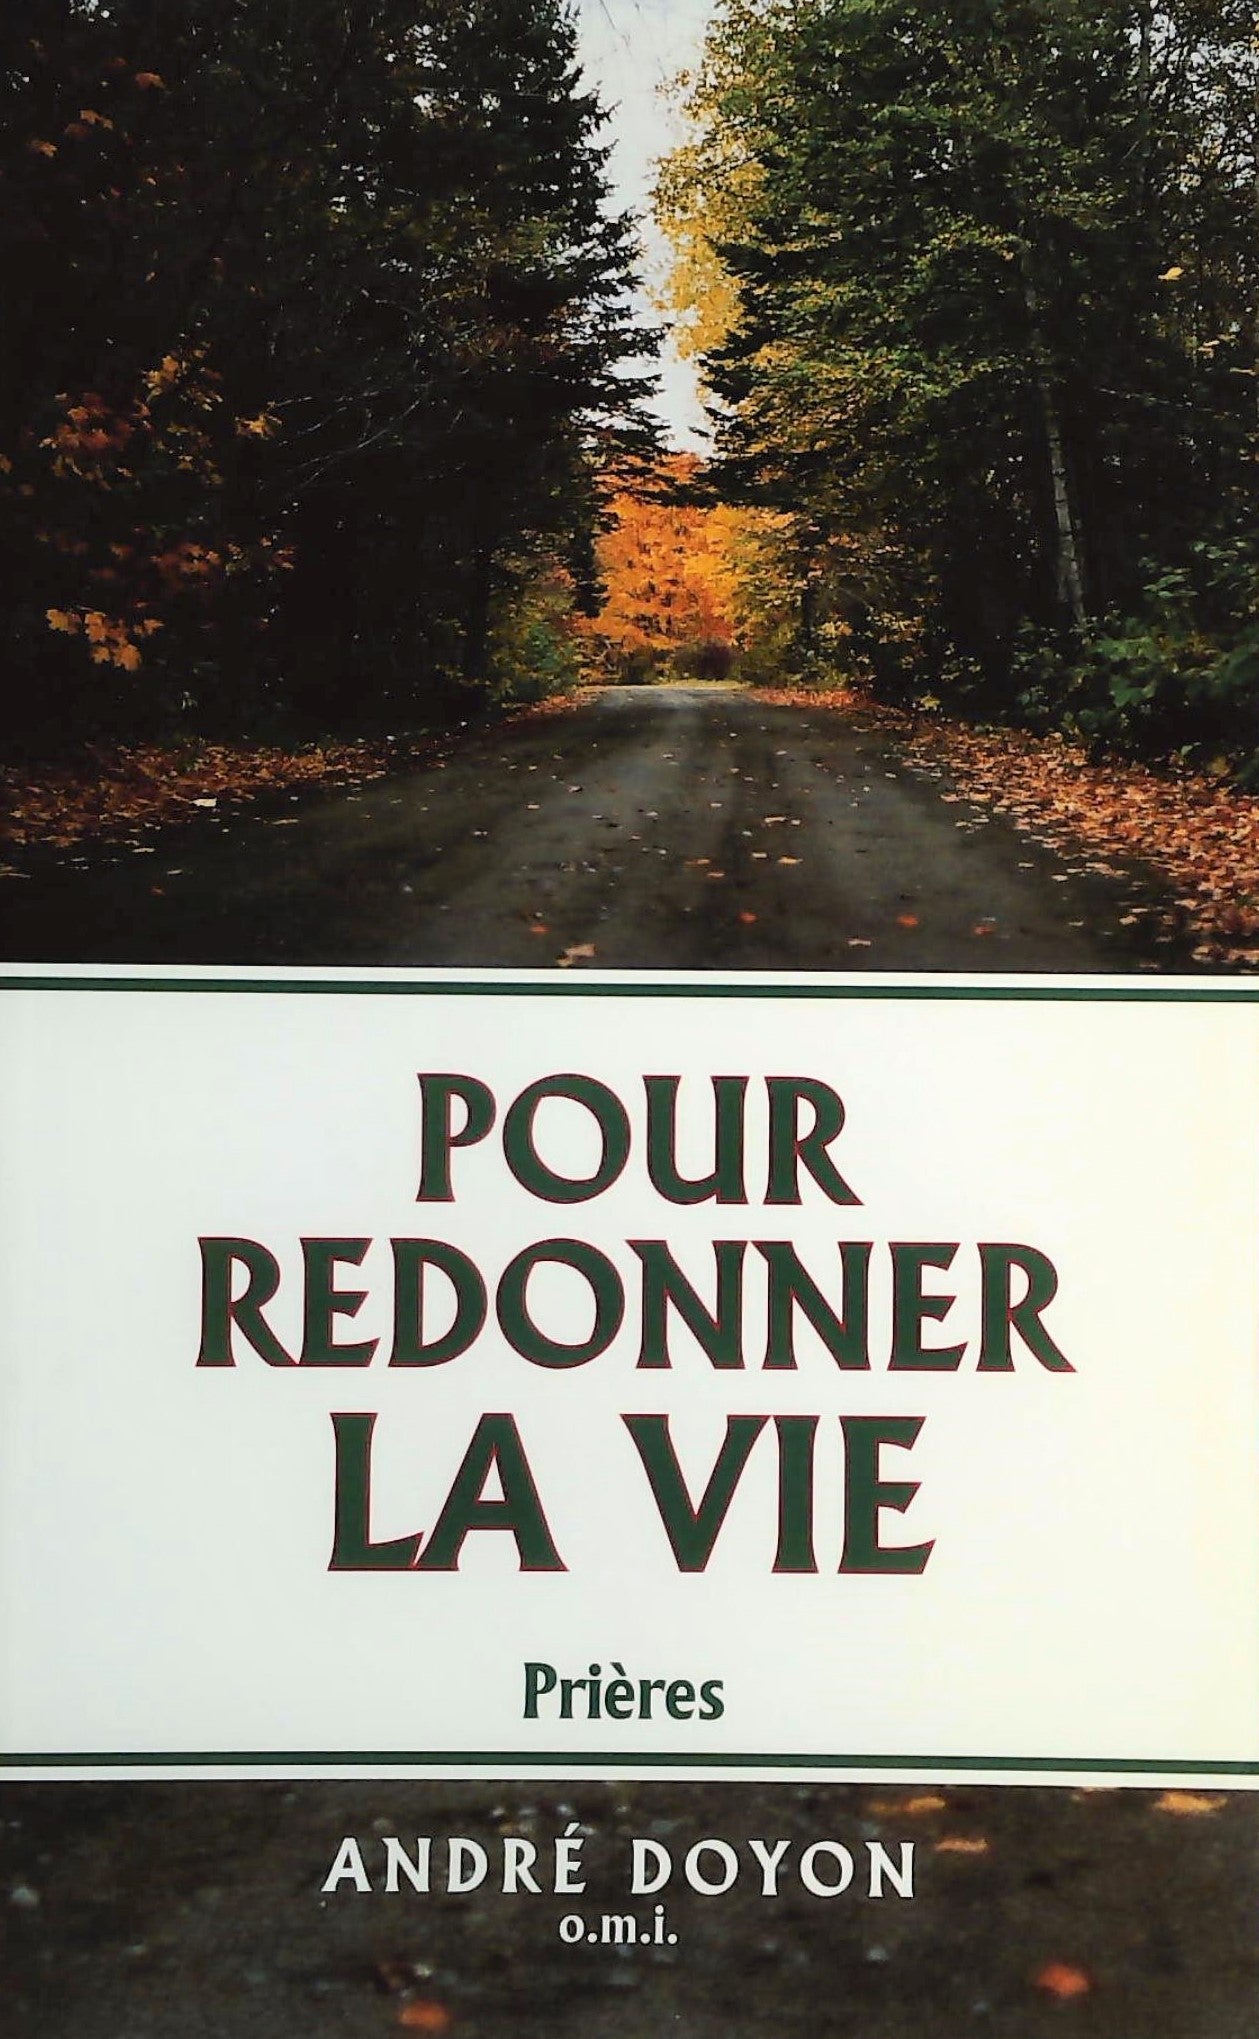 Livre ISBN 2891292472 Pour redonner la vie : prières (André Doyon)